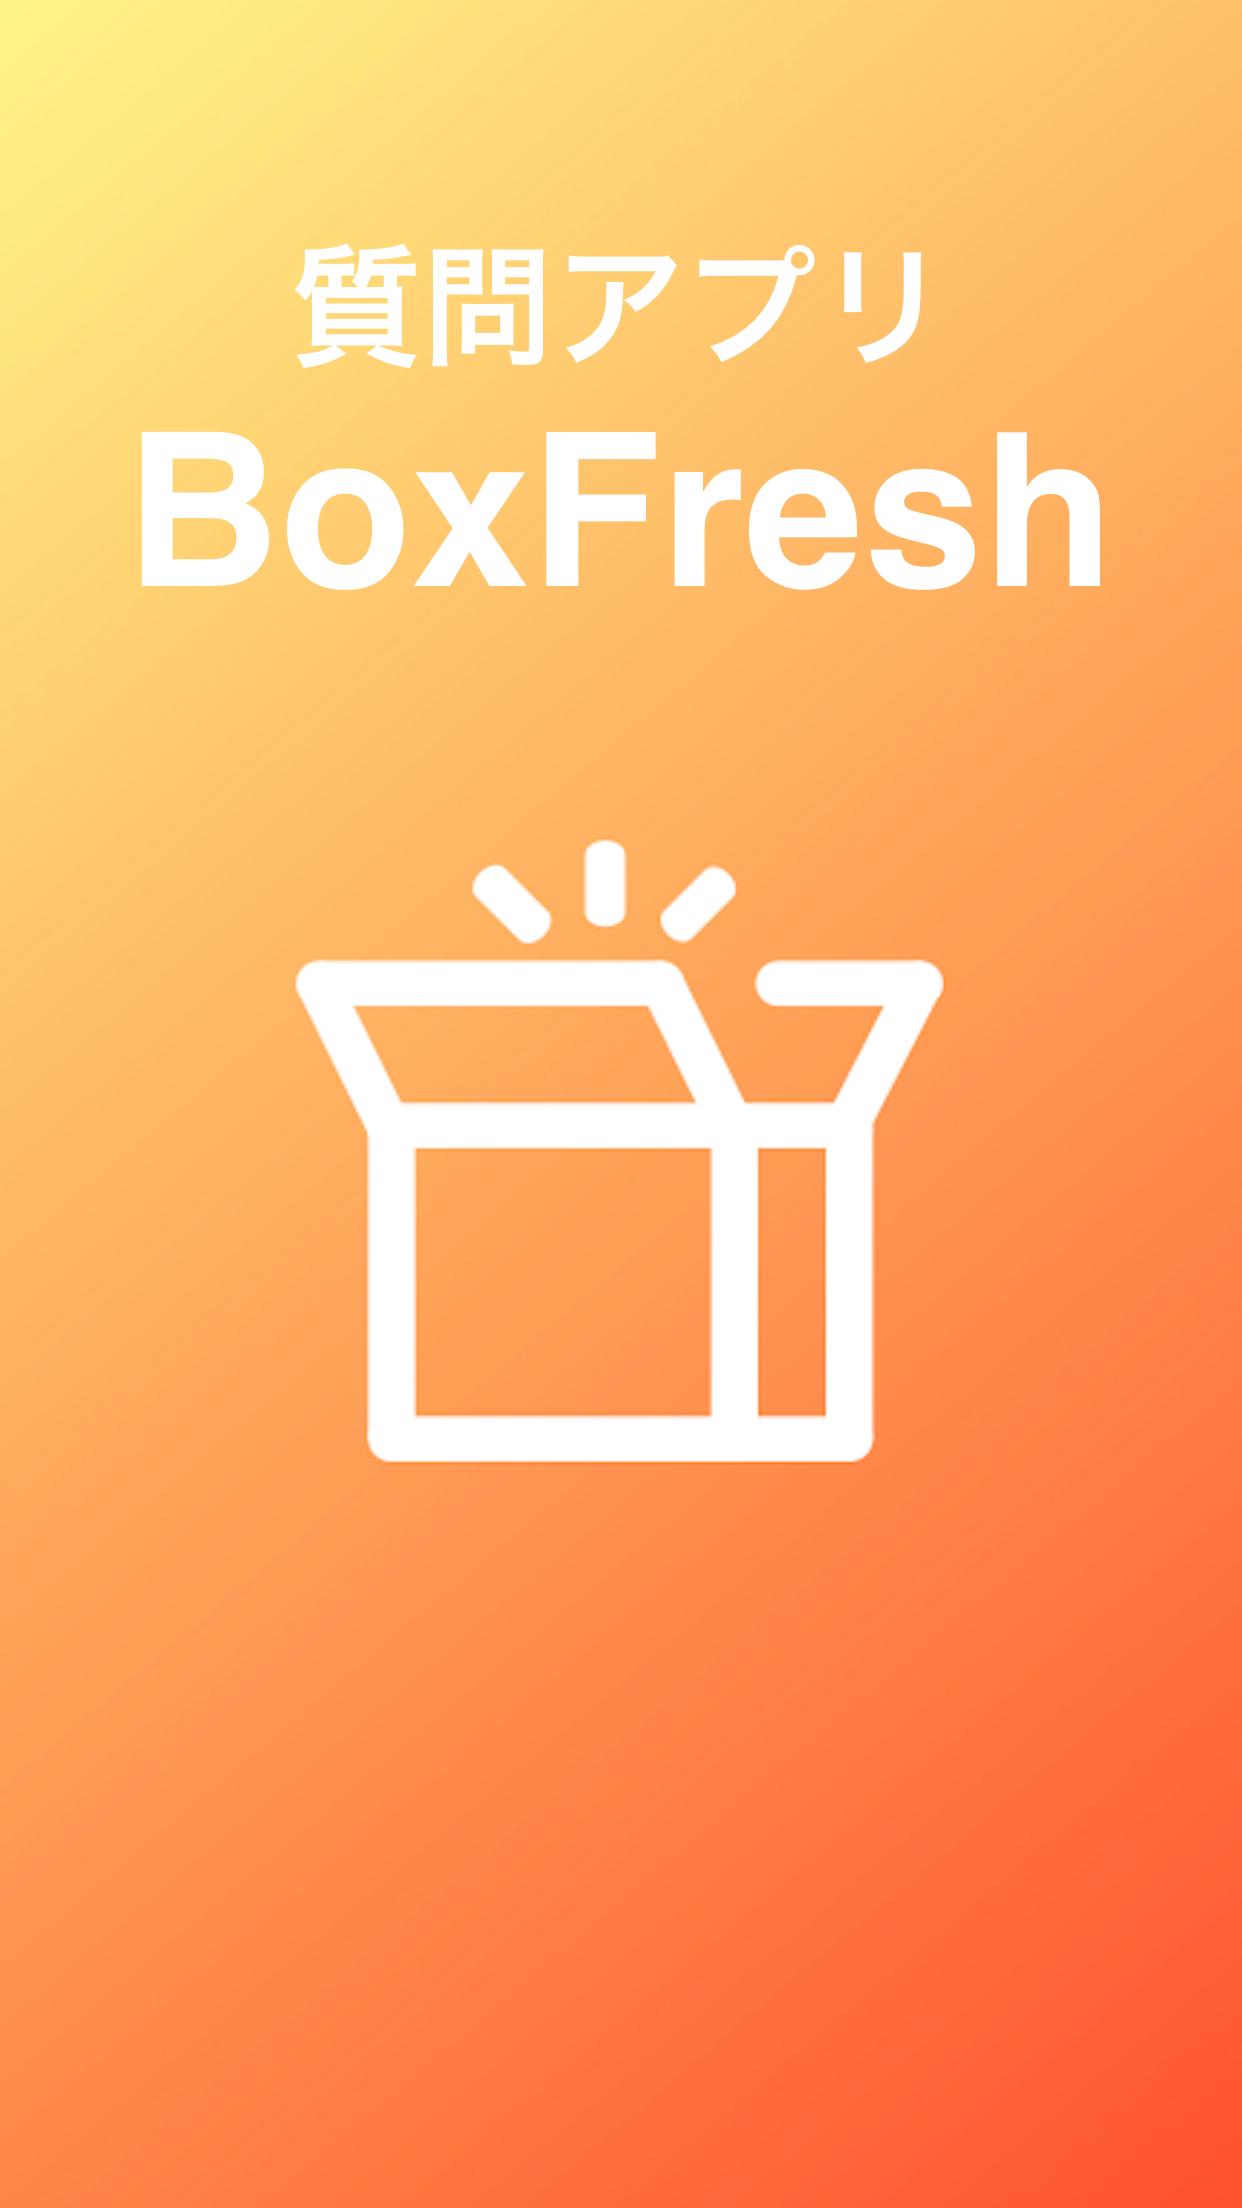 Android 用の Boxfresh ボックスフレッシュ ー 匿名質問アプリ Apk をダウンロード